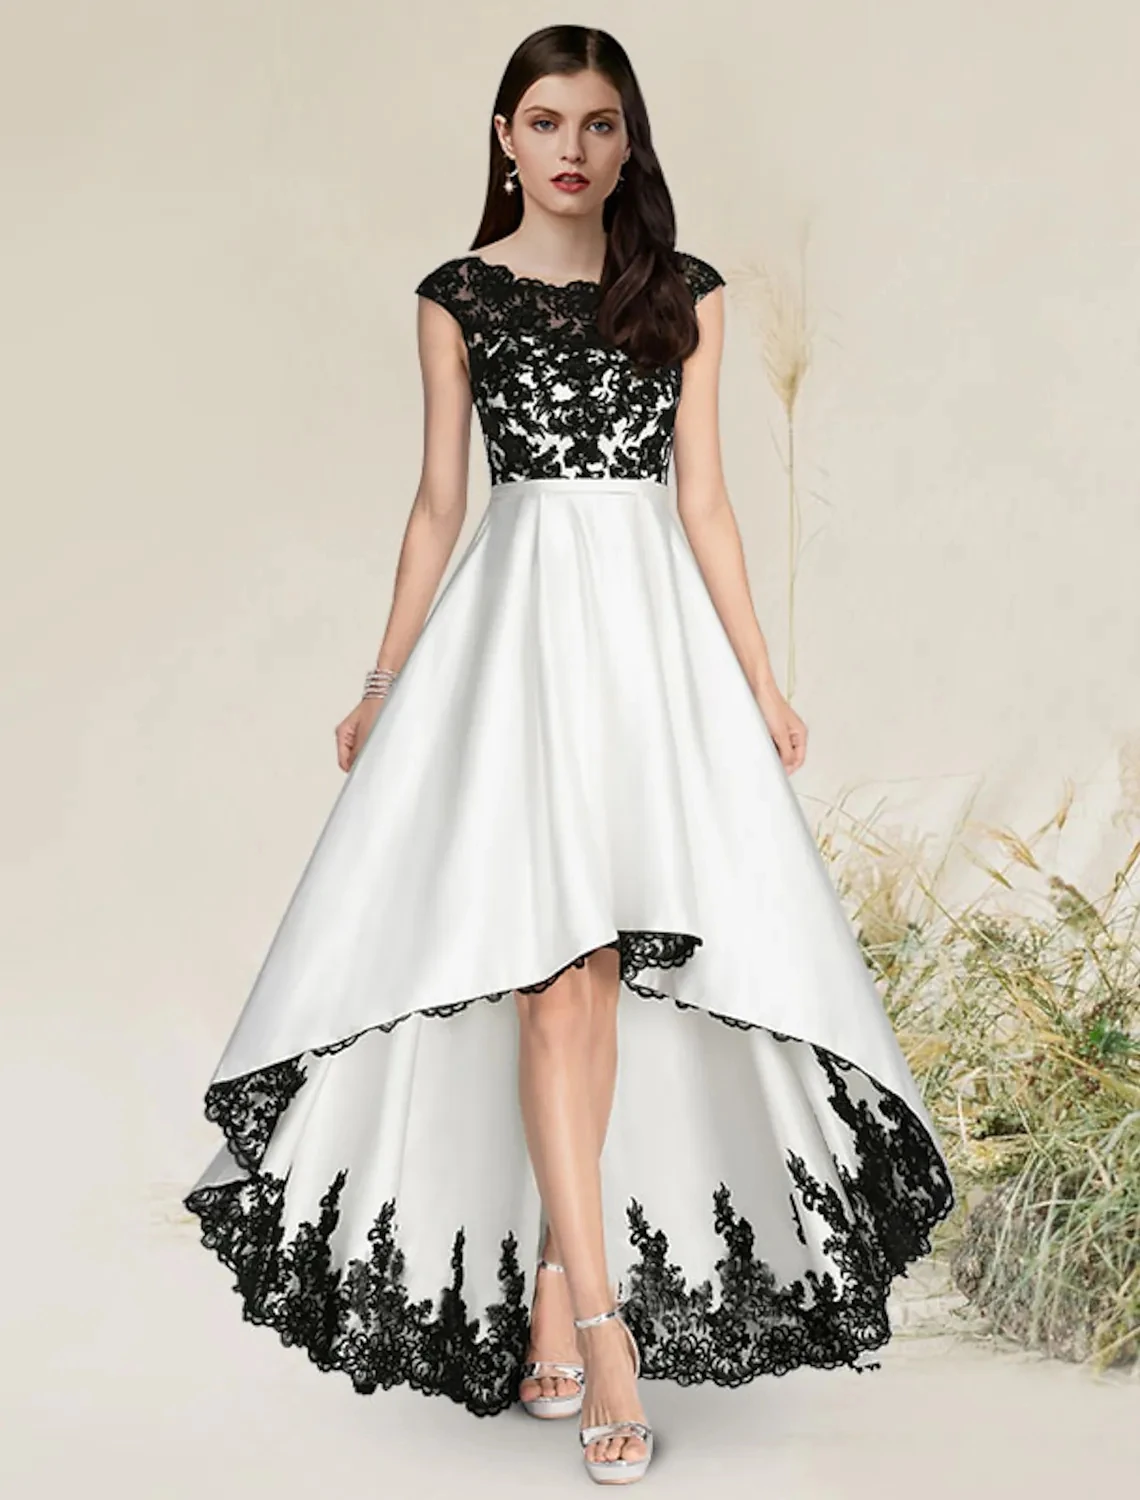 

Vintage Ligh Low Evening Party Dresses Jewel Black Appliques Lace Satin Formal Prom Gowns Robe De Soiree Vestidos Festa